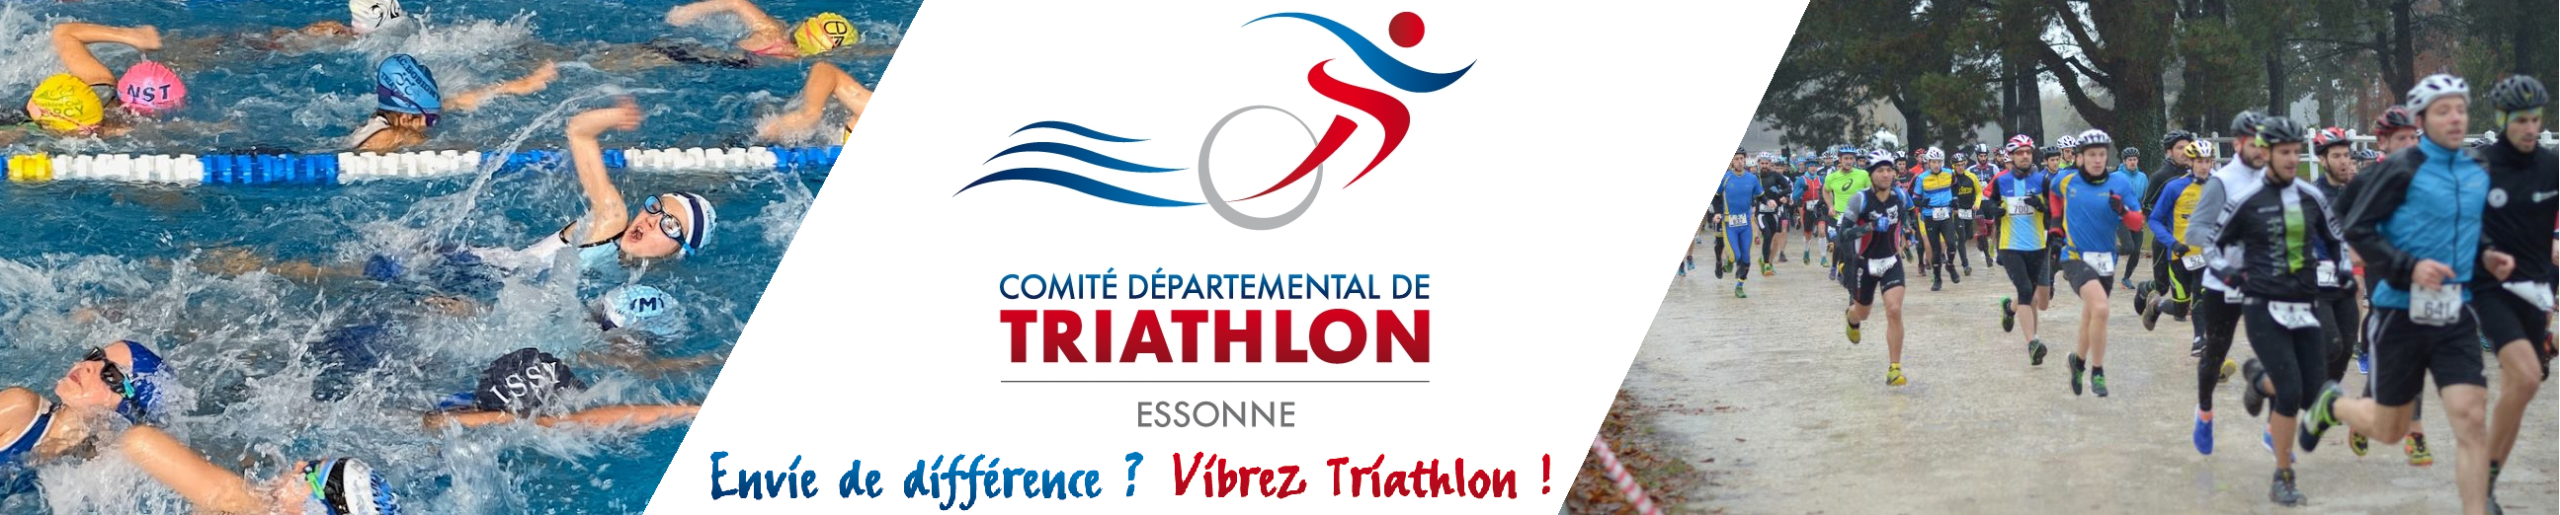 Comité Départemental de Triathlon de l'Essonne